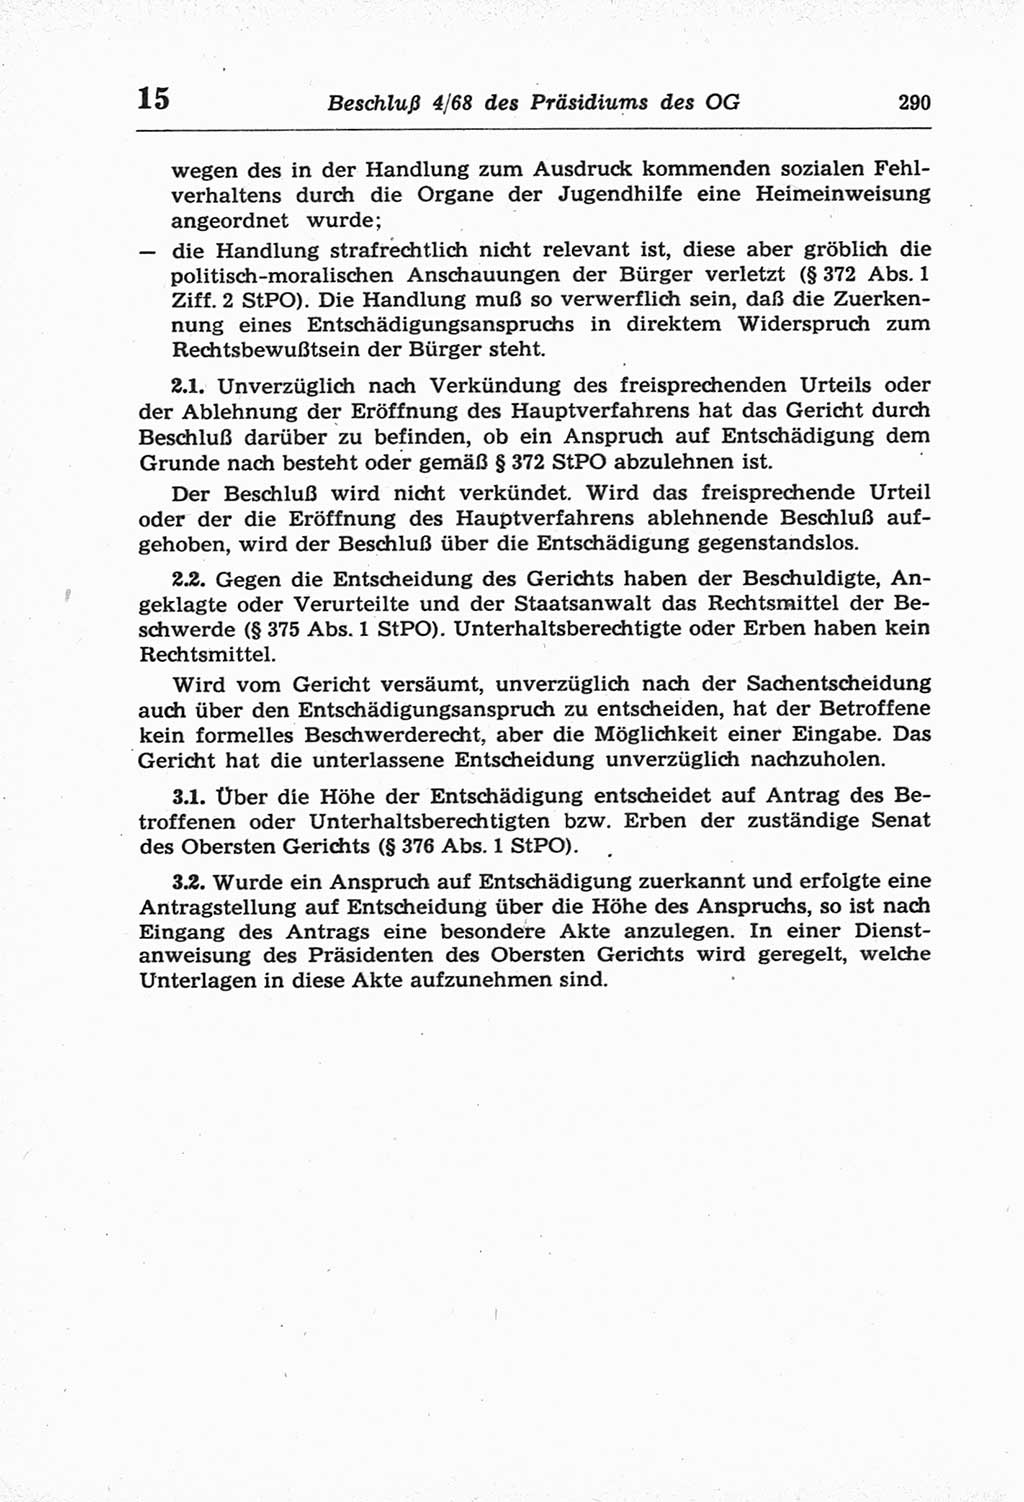 Strafprozeßordnung (StPO) der Deutschen Demokratischen Republik (DDR) und angrenzende Gesetze und Bestimmungen 1968, Seite 290 (StPO Ges. Bstgn. DDR 1968, S. 290)